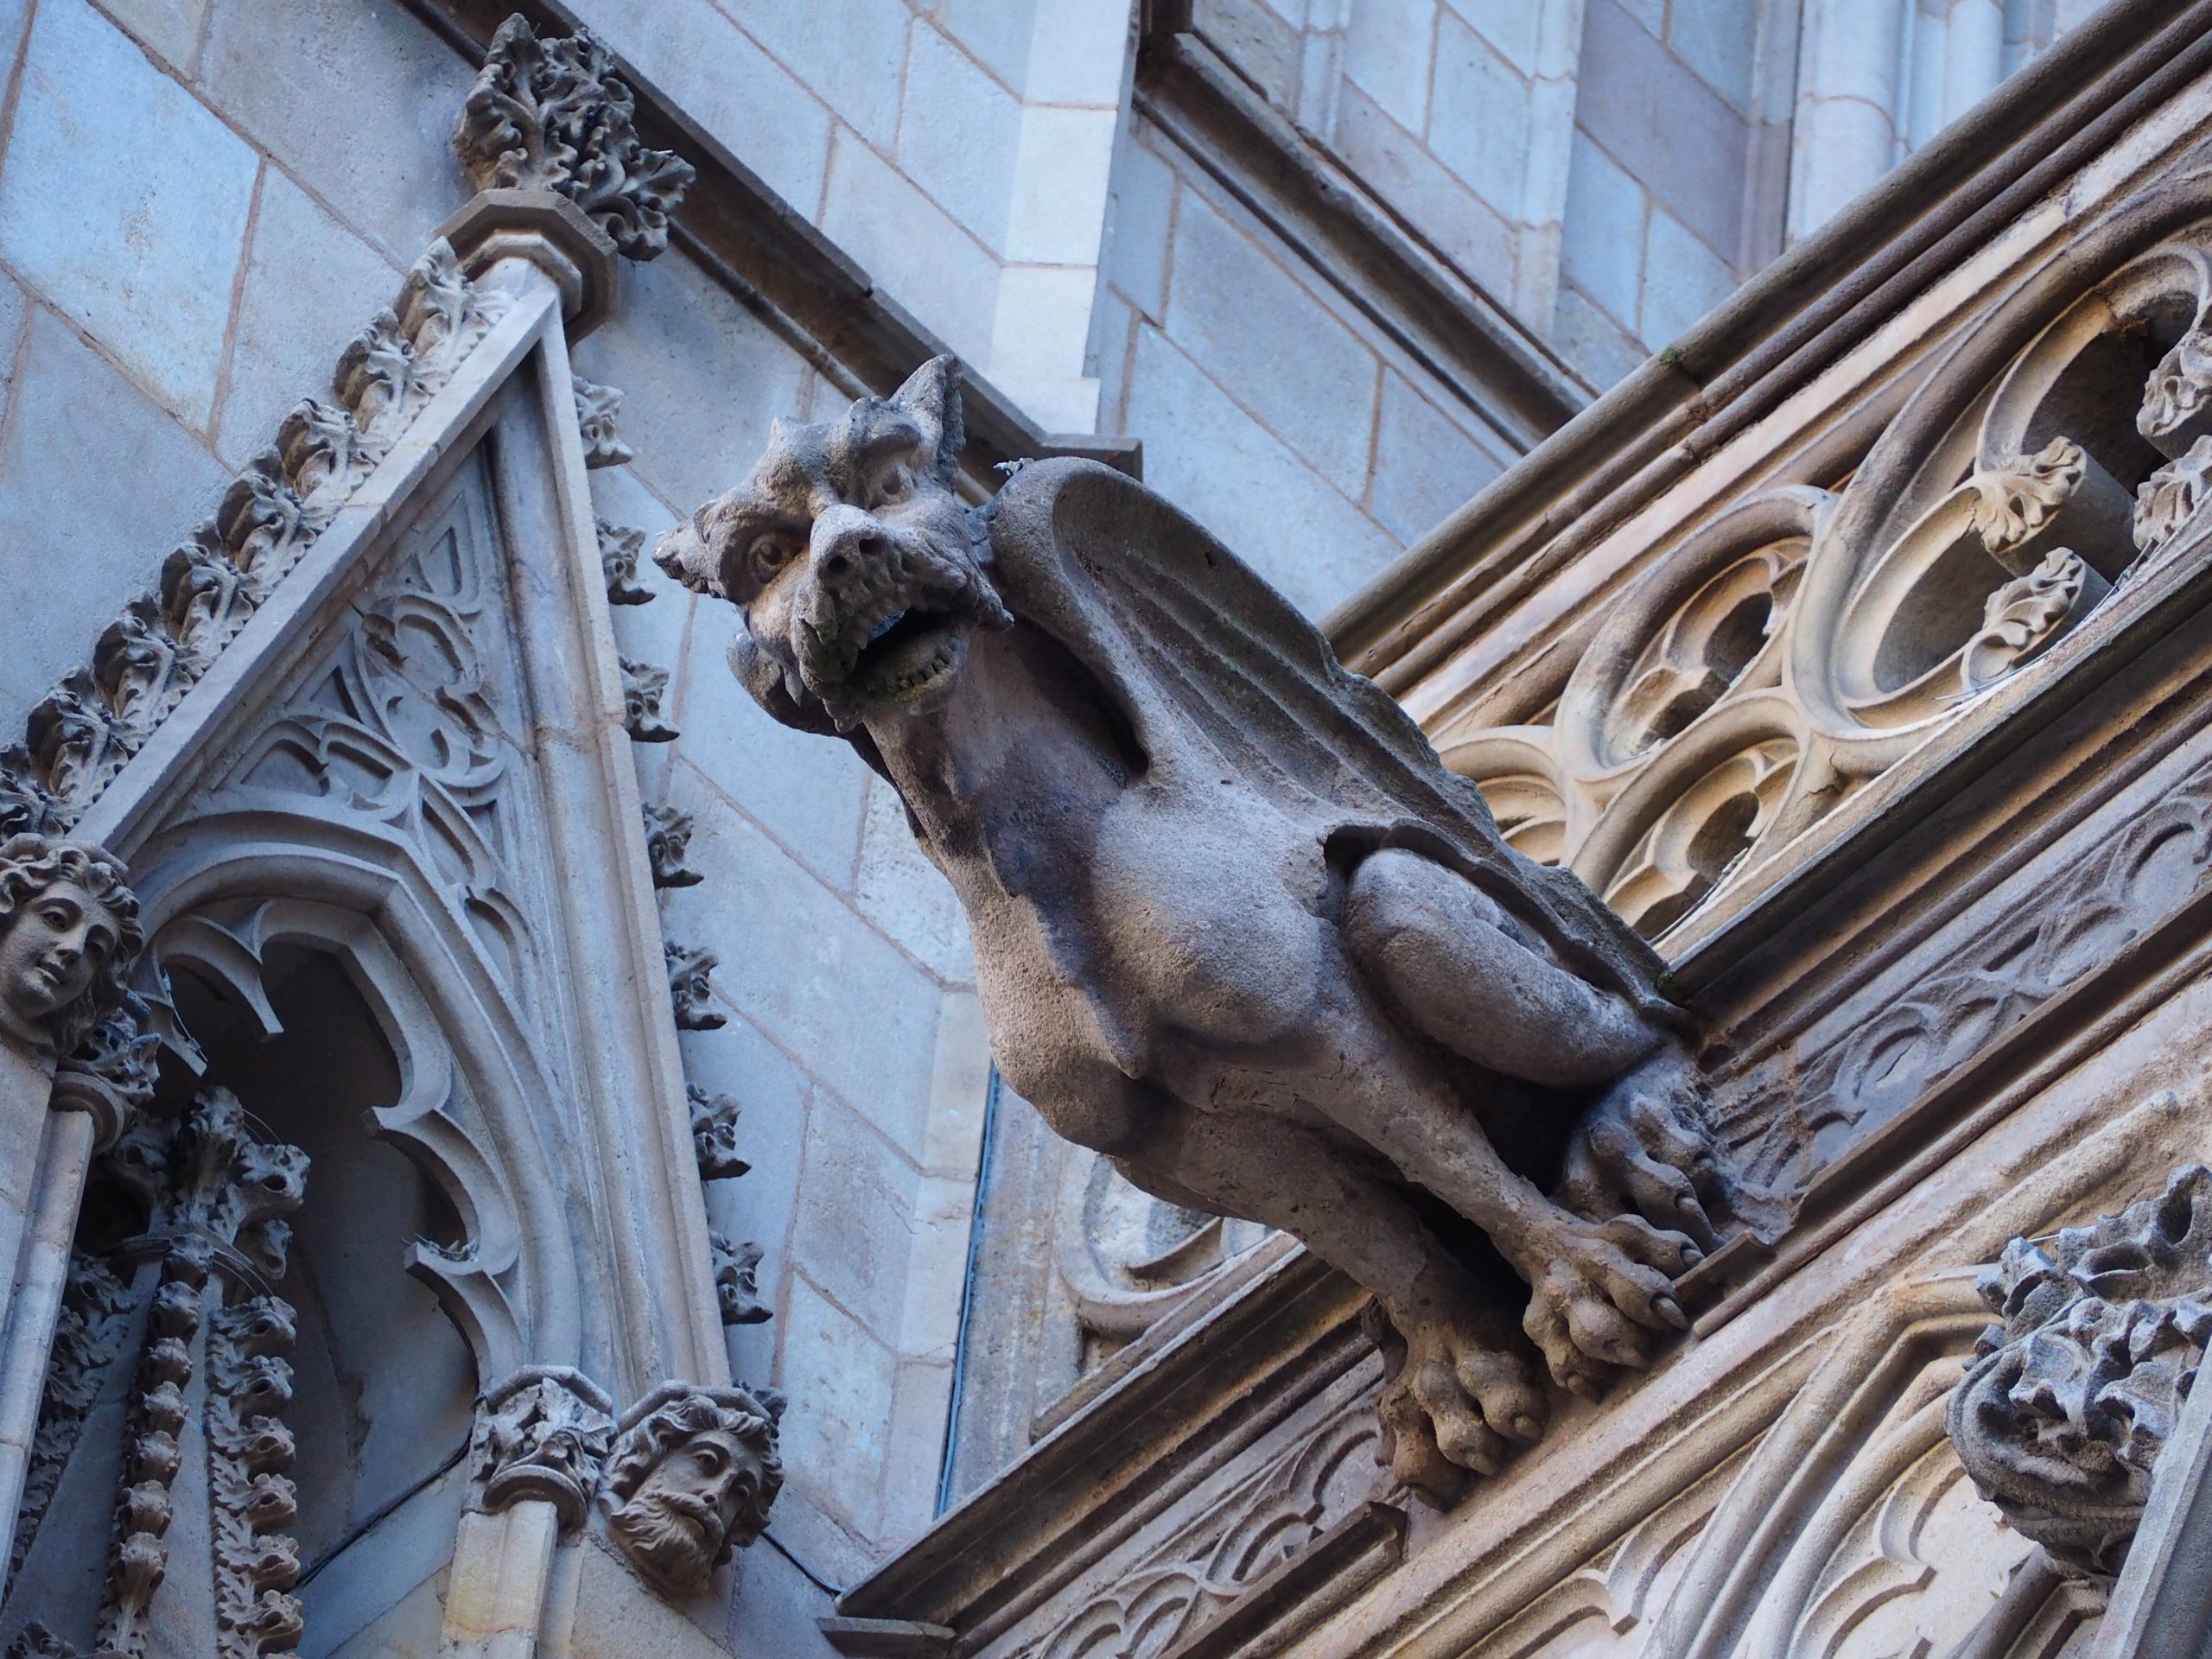 gárgola con forma de dragón en la catedral de barcelona, el barrio gótico. visita guiada para niños